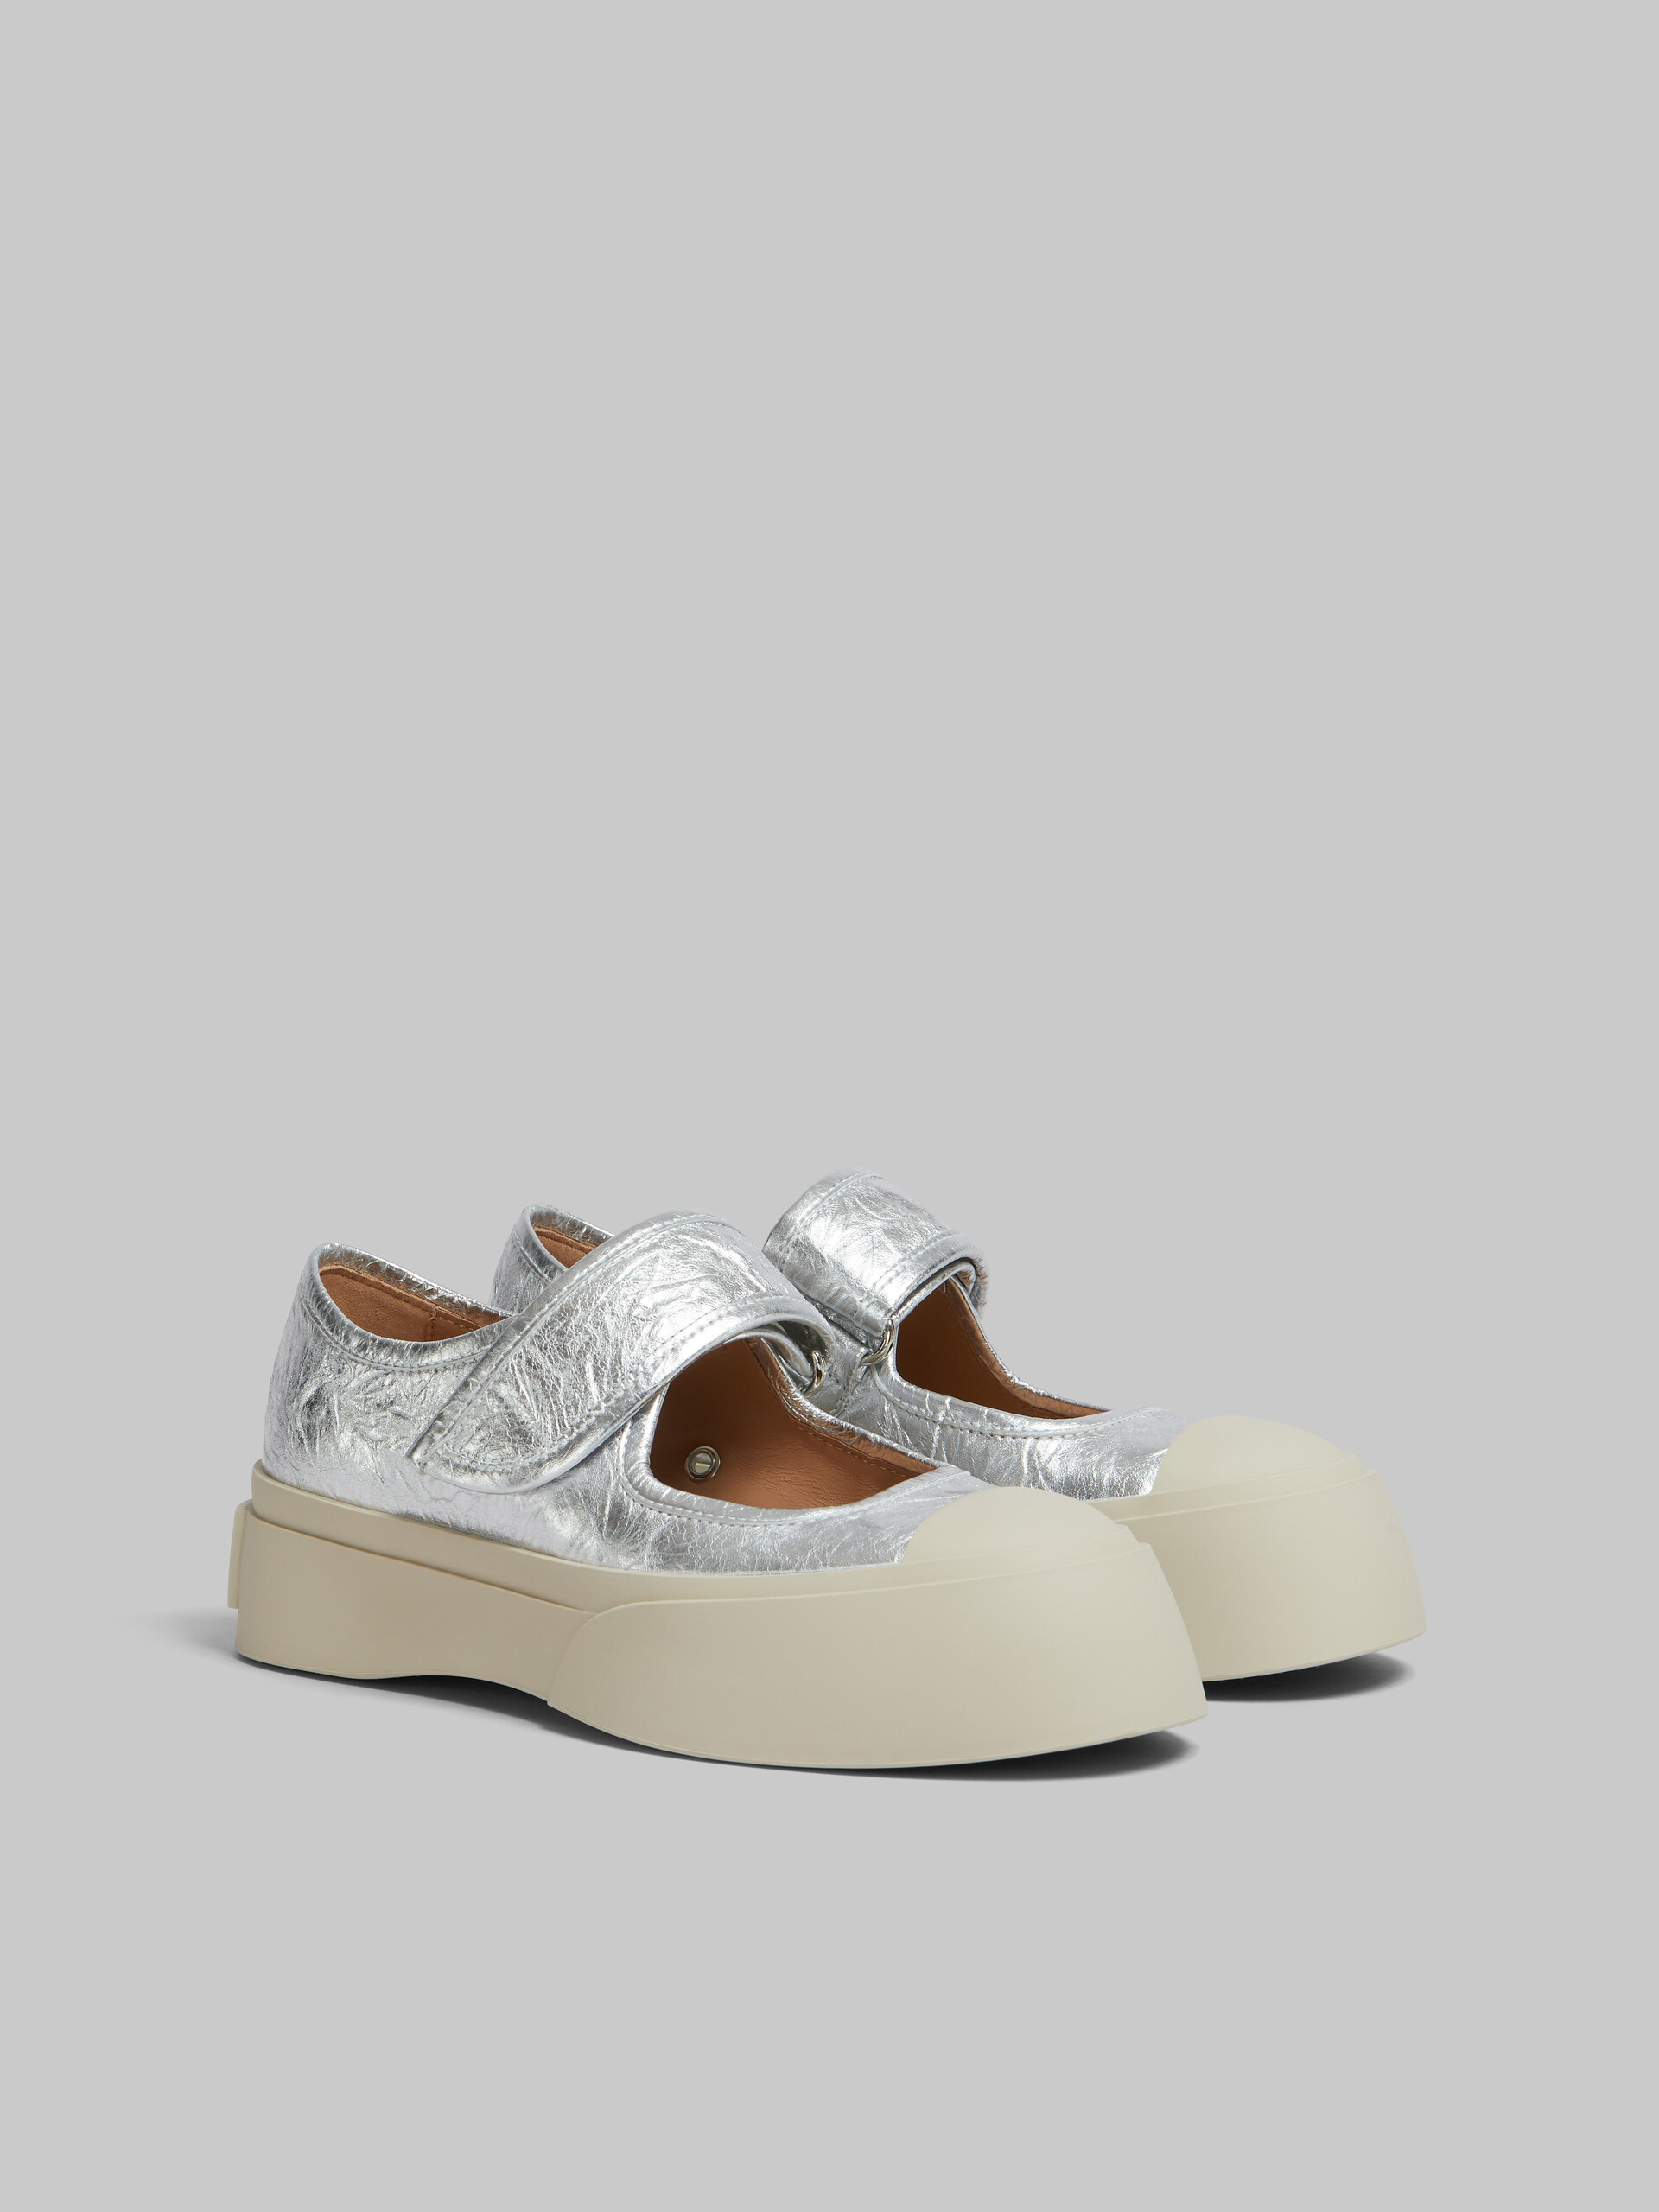 Zapatilla Mary Jane de piel plateada - Sneakers - Image 2